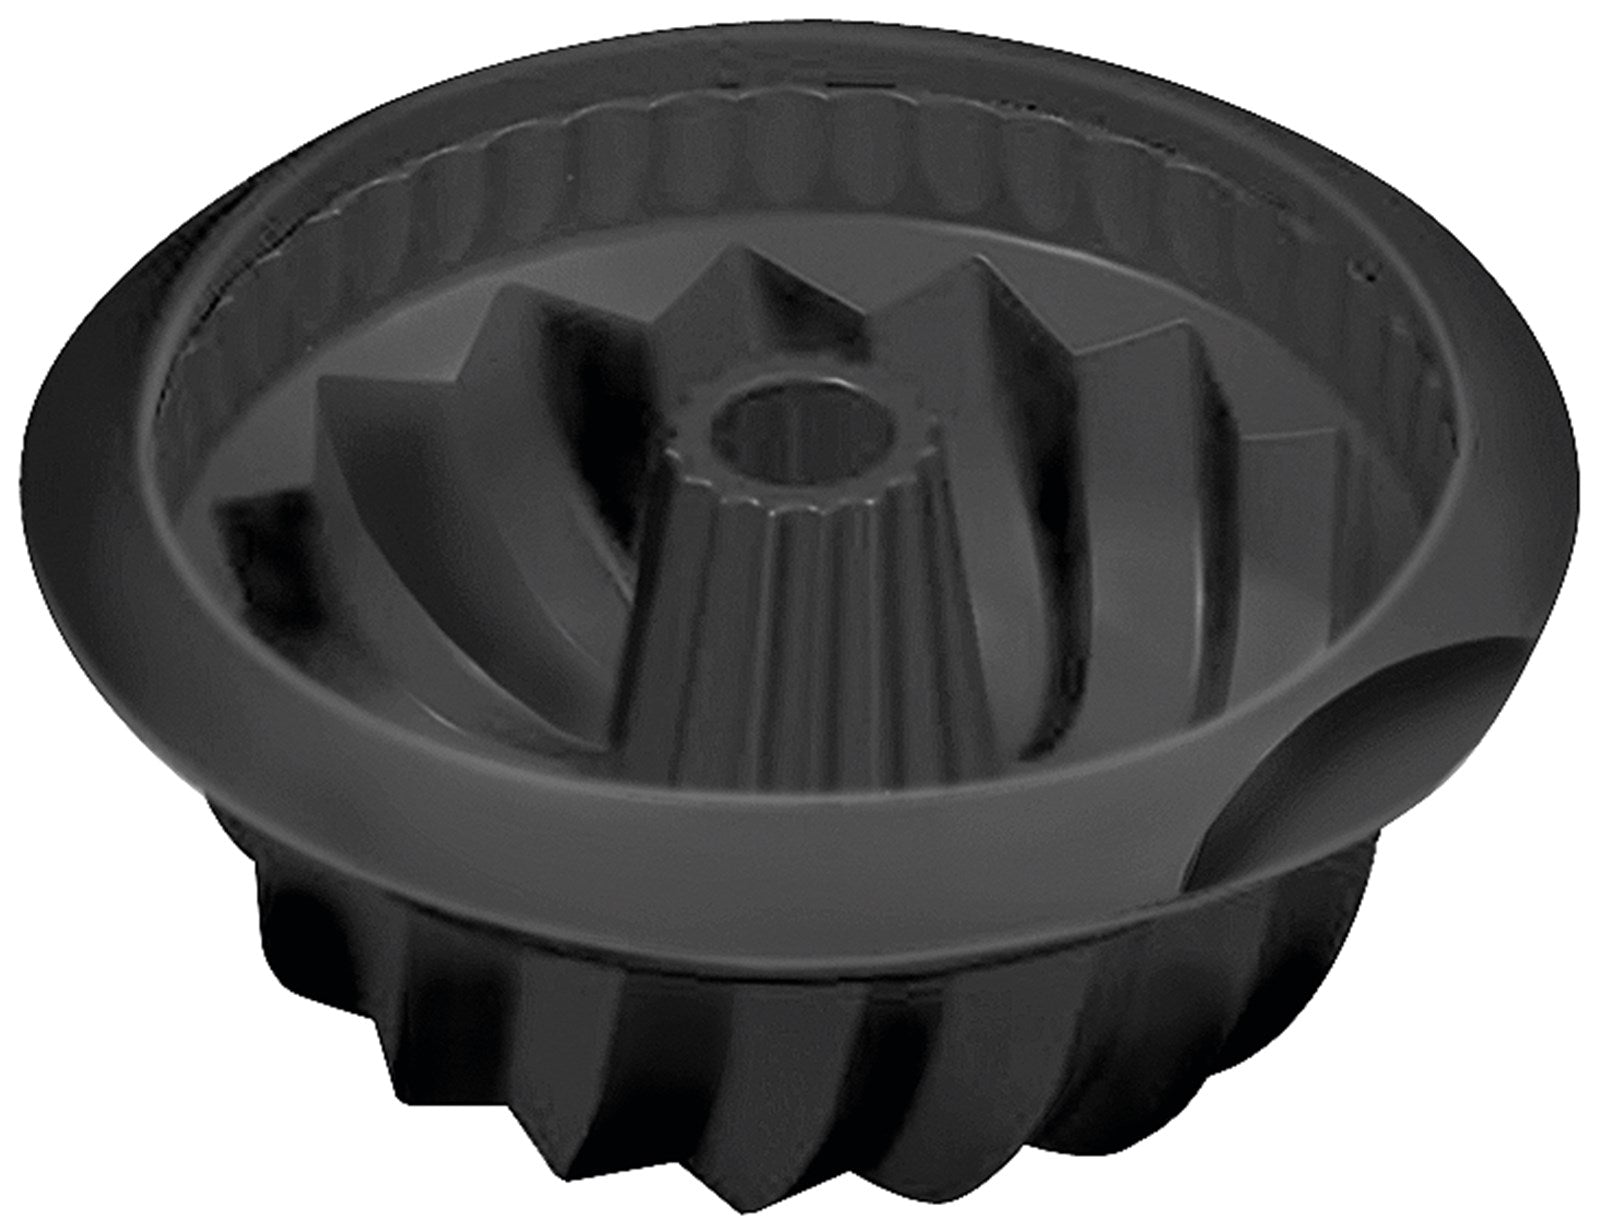 Backform Gugelhopf schwarz, 22x11.5 cm in Schwarz präsentiert im Onlineshop von KAQTU Design AG. Backen ist von Lékué